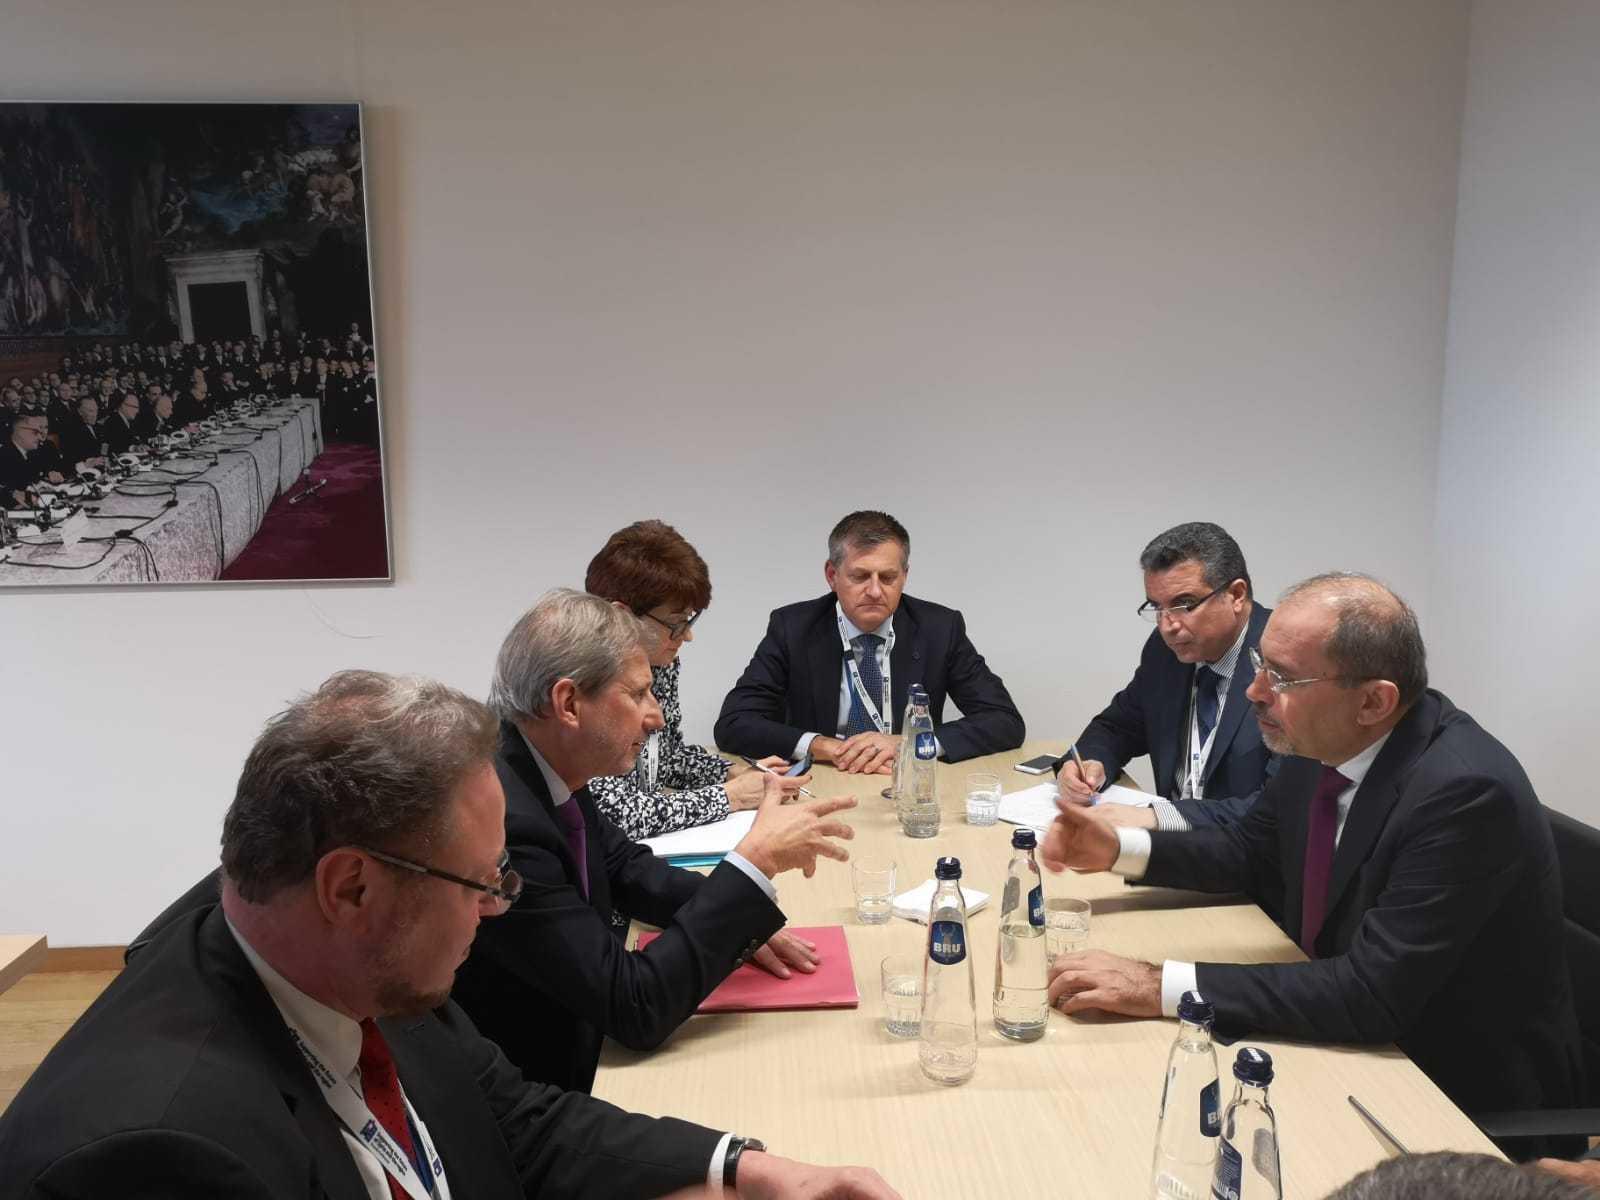 وزير الخارجية أيمن الصفدي يلتقي عددا من المشاركين في مؤتمر بروكسل الثالث. (وزارة الخارجية وشؤون المغتربين)